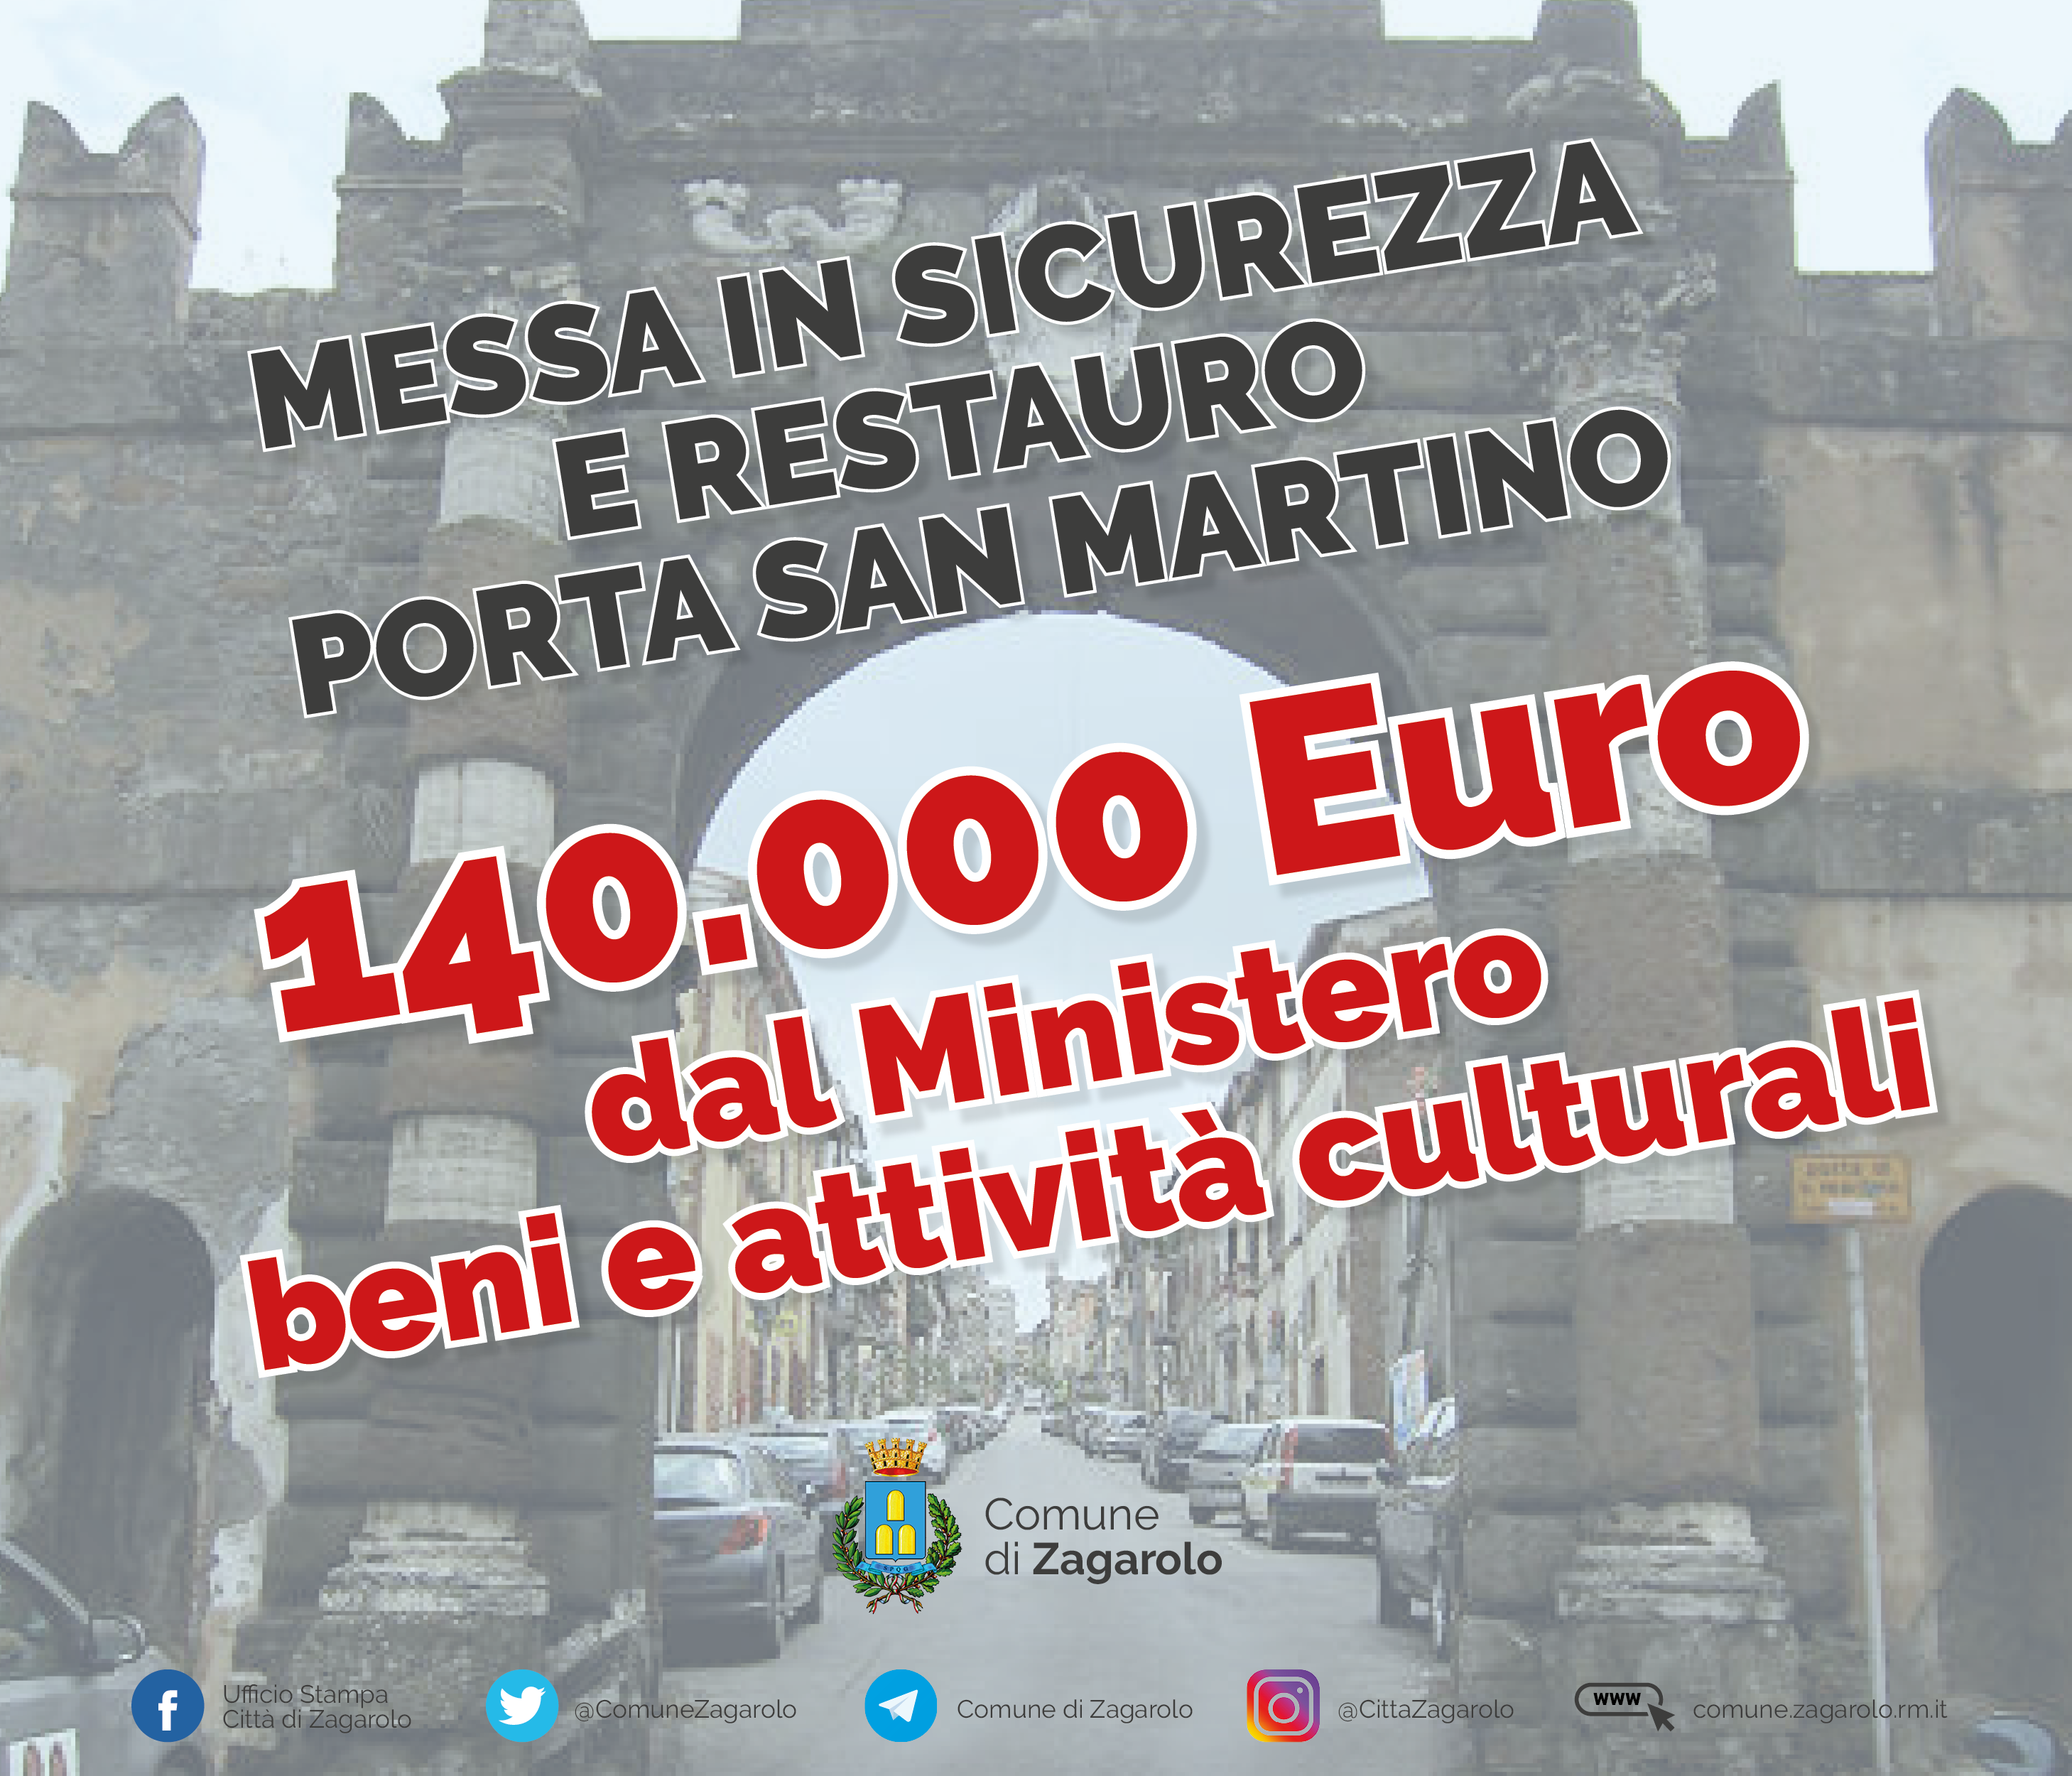 PORTA MONUMENTALE DI SAN MARTINO - STANZIATI 140.000 EURO PER LA MESSA IN SICUREZZA E IL RESTAURO